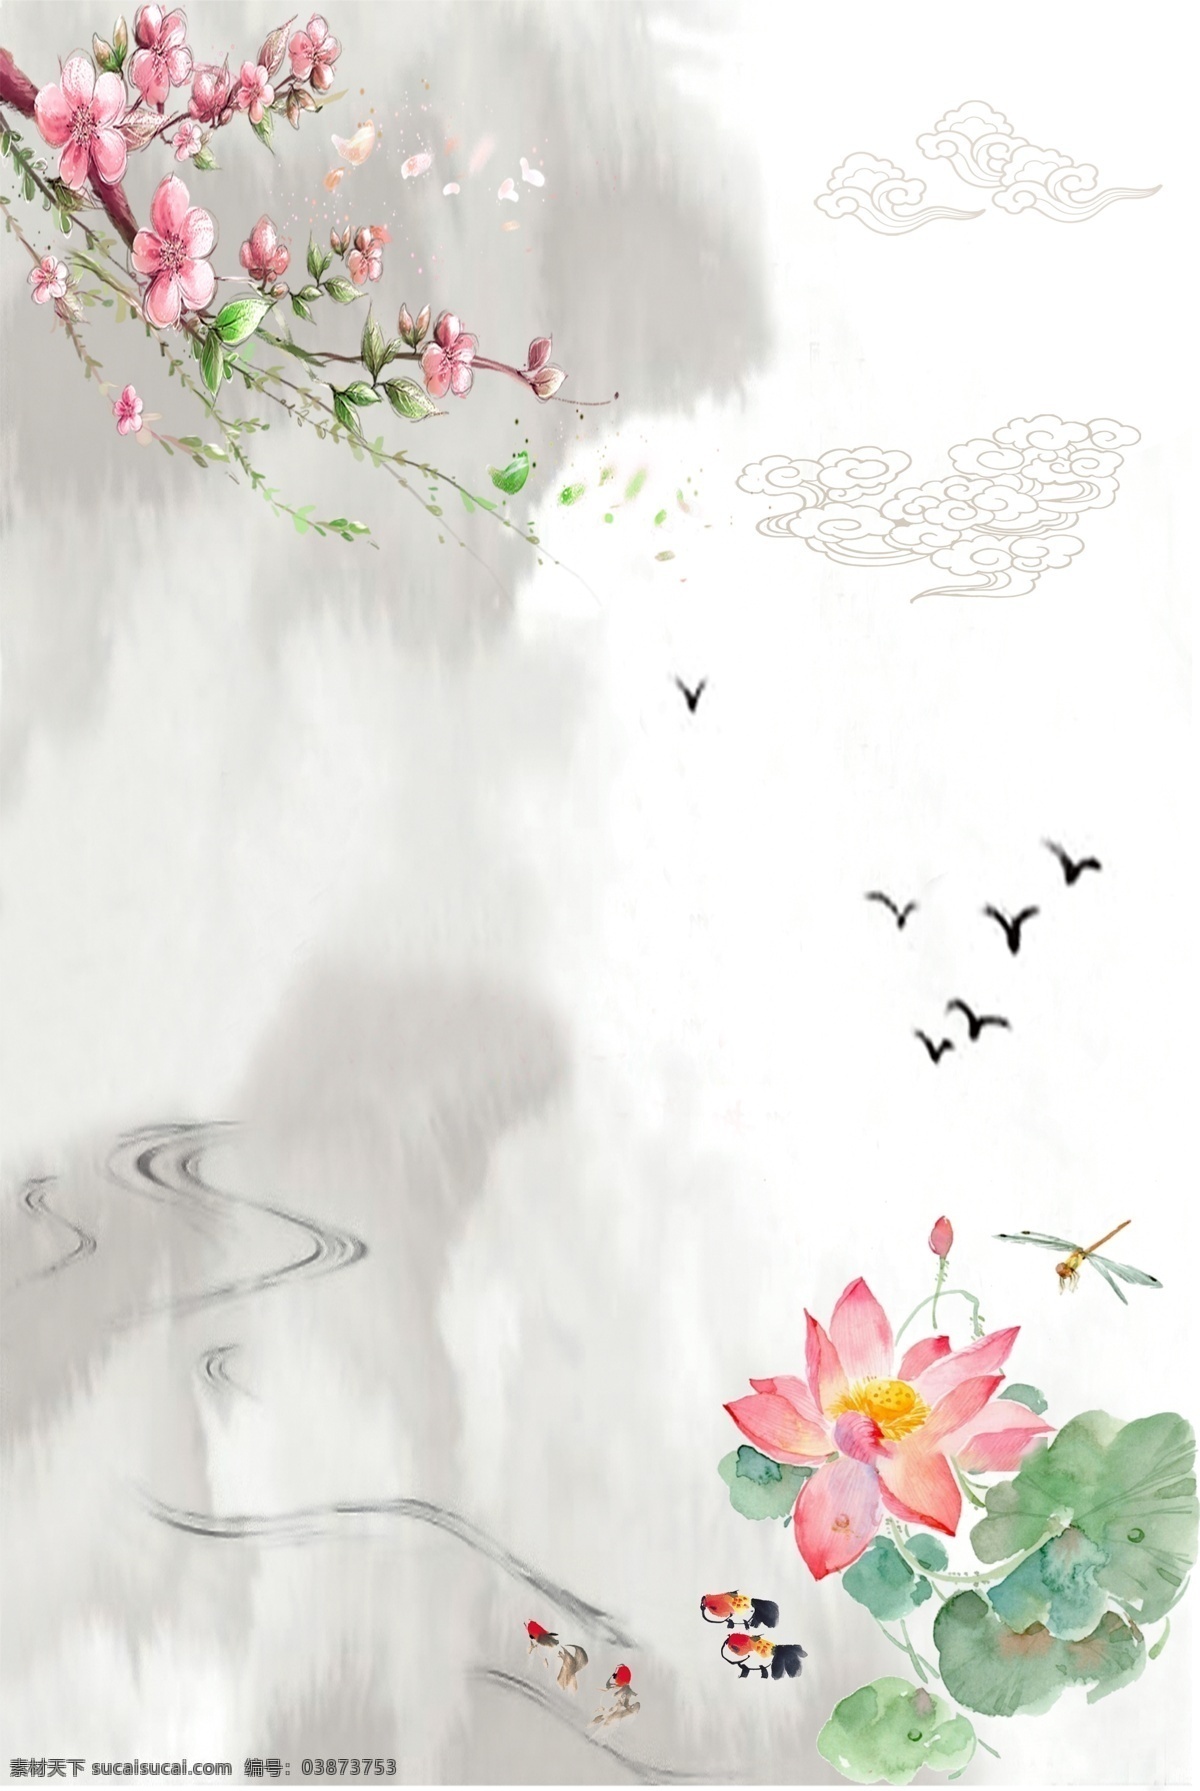 中国 风 海报 背景 模板 中国风 水墨 荷花 竹叶 山水 文艺 房屋 鸟